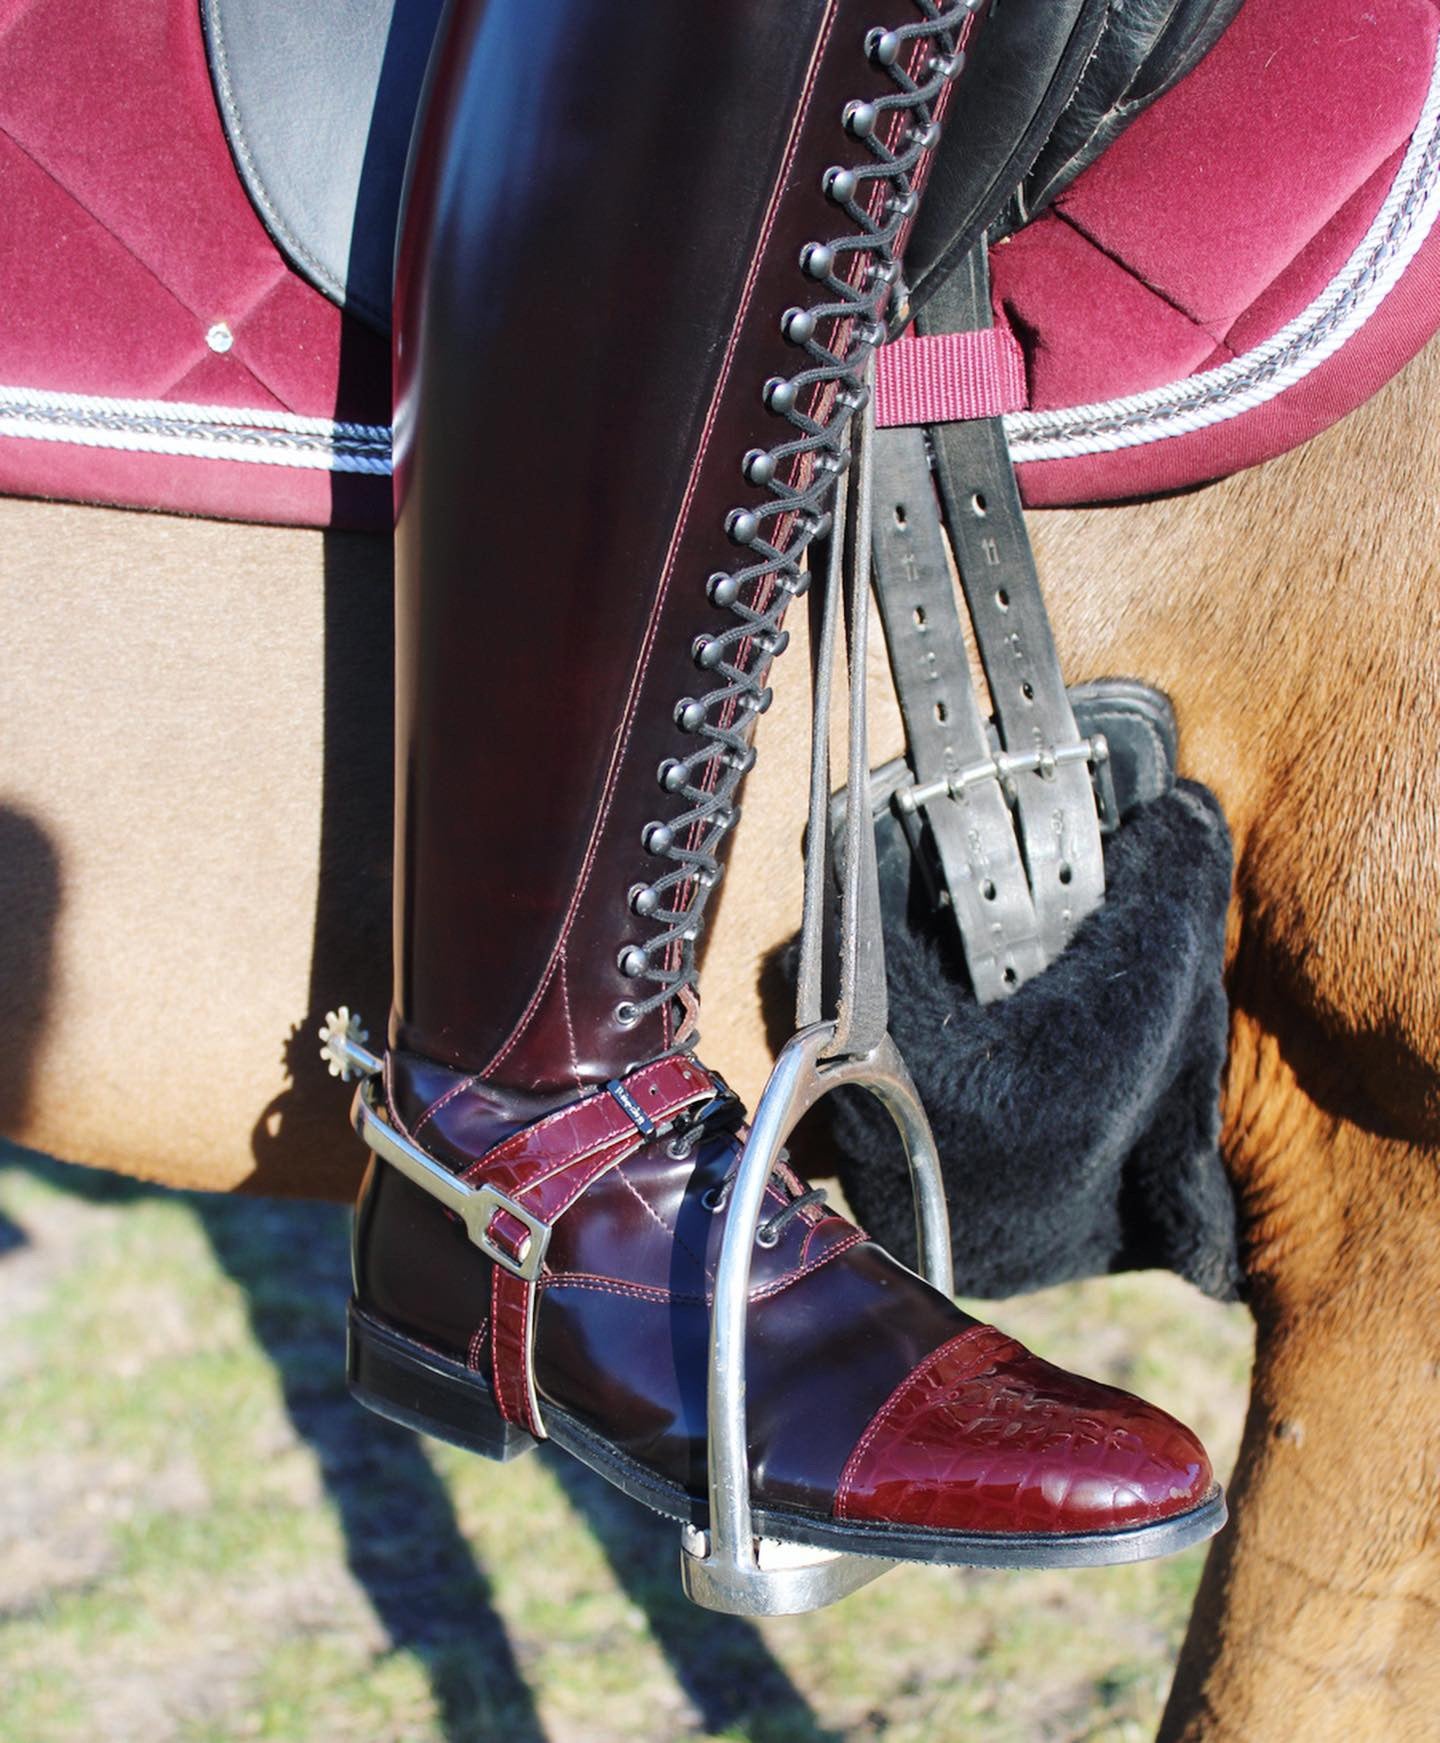 Tall Boots Australia – Urban Horsewear